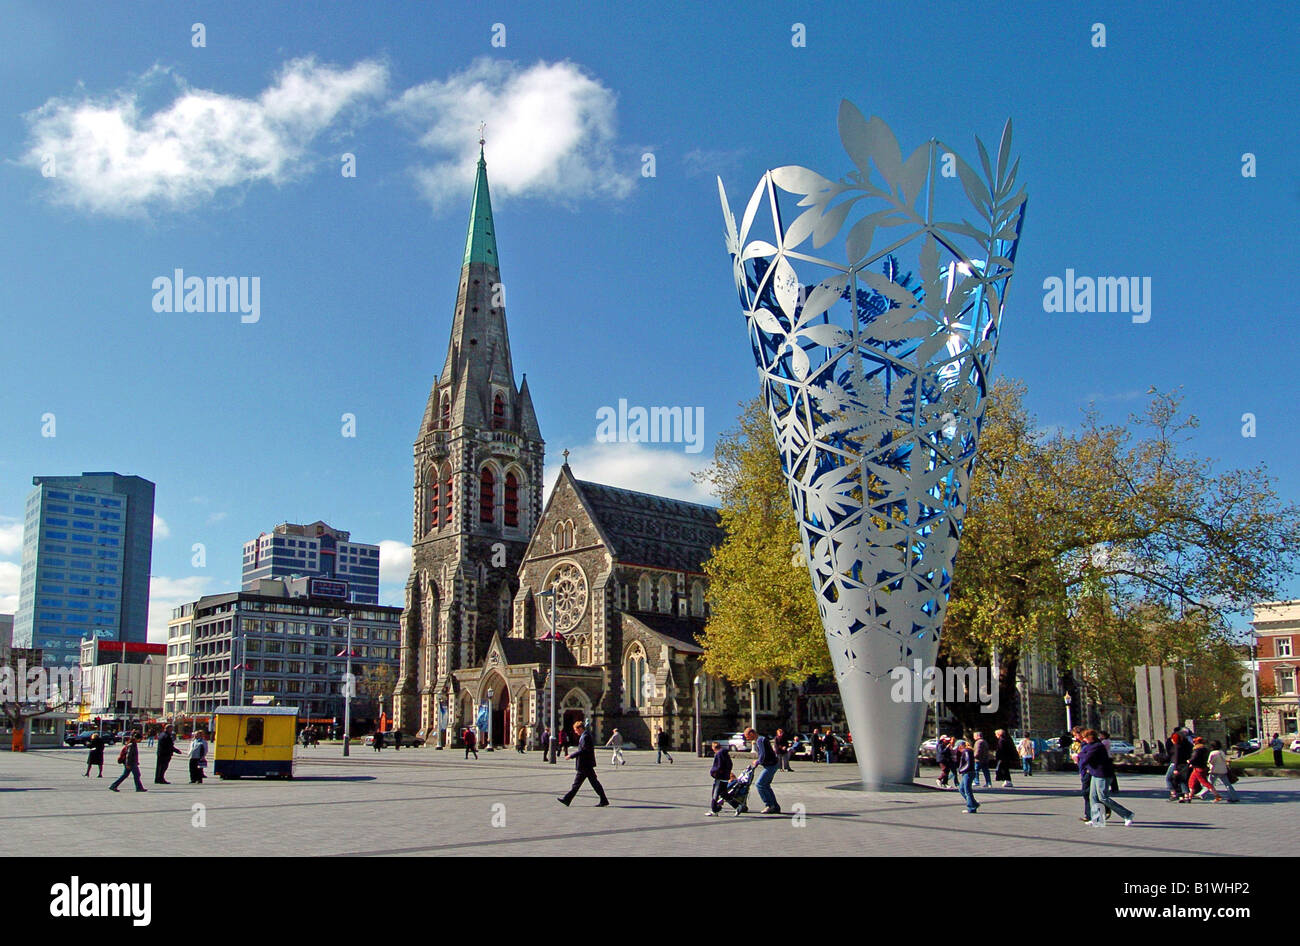 L'île du Sud Nouvelle-zélande Christchurch Millennium cône inversé en sculpture Place de la Cathédrale avec les personnes qui s'y passé. Banque D'Images